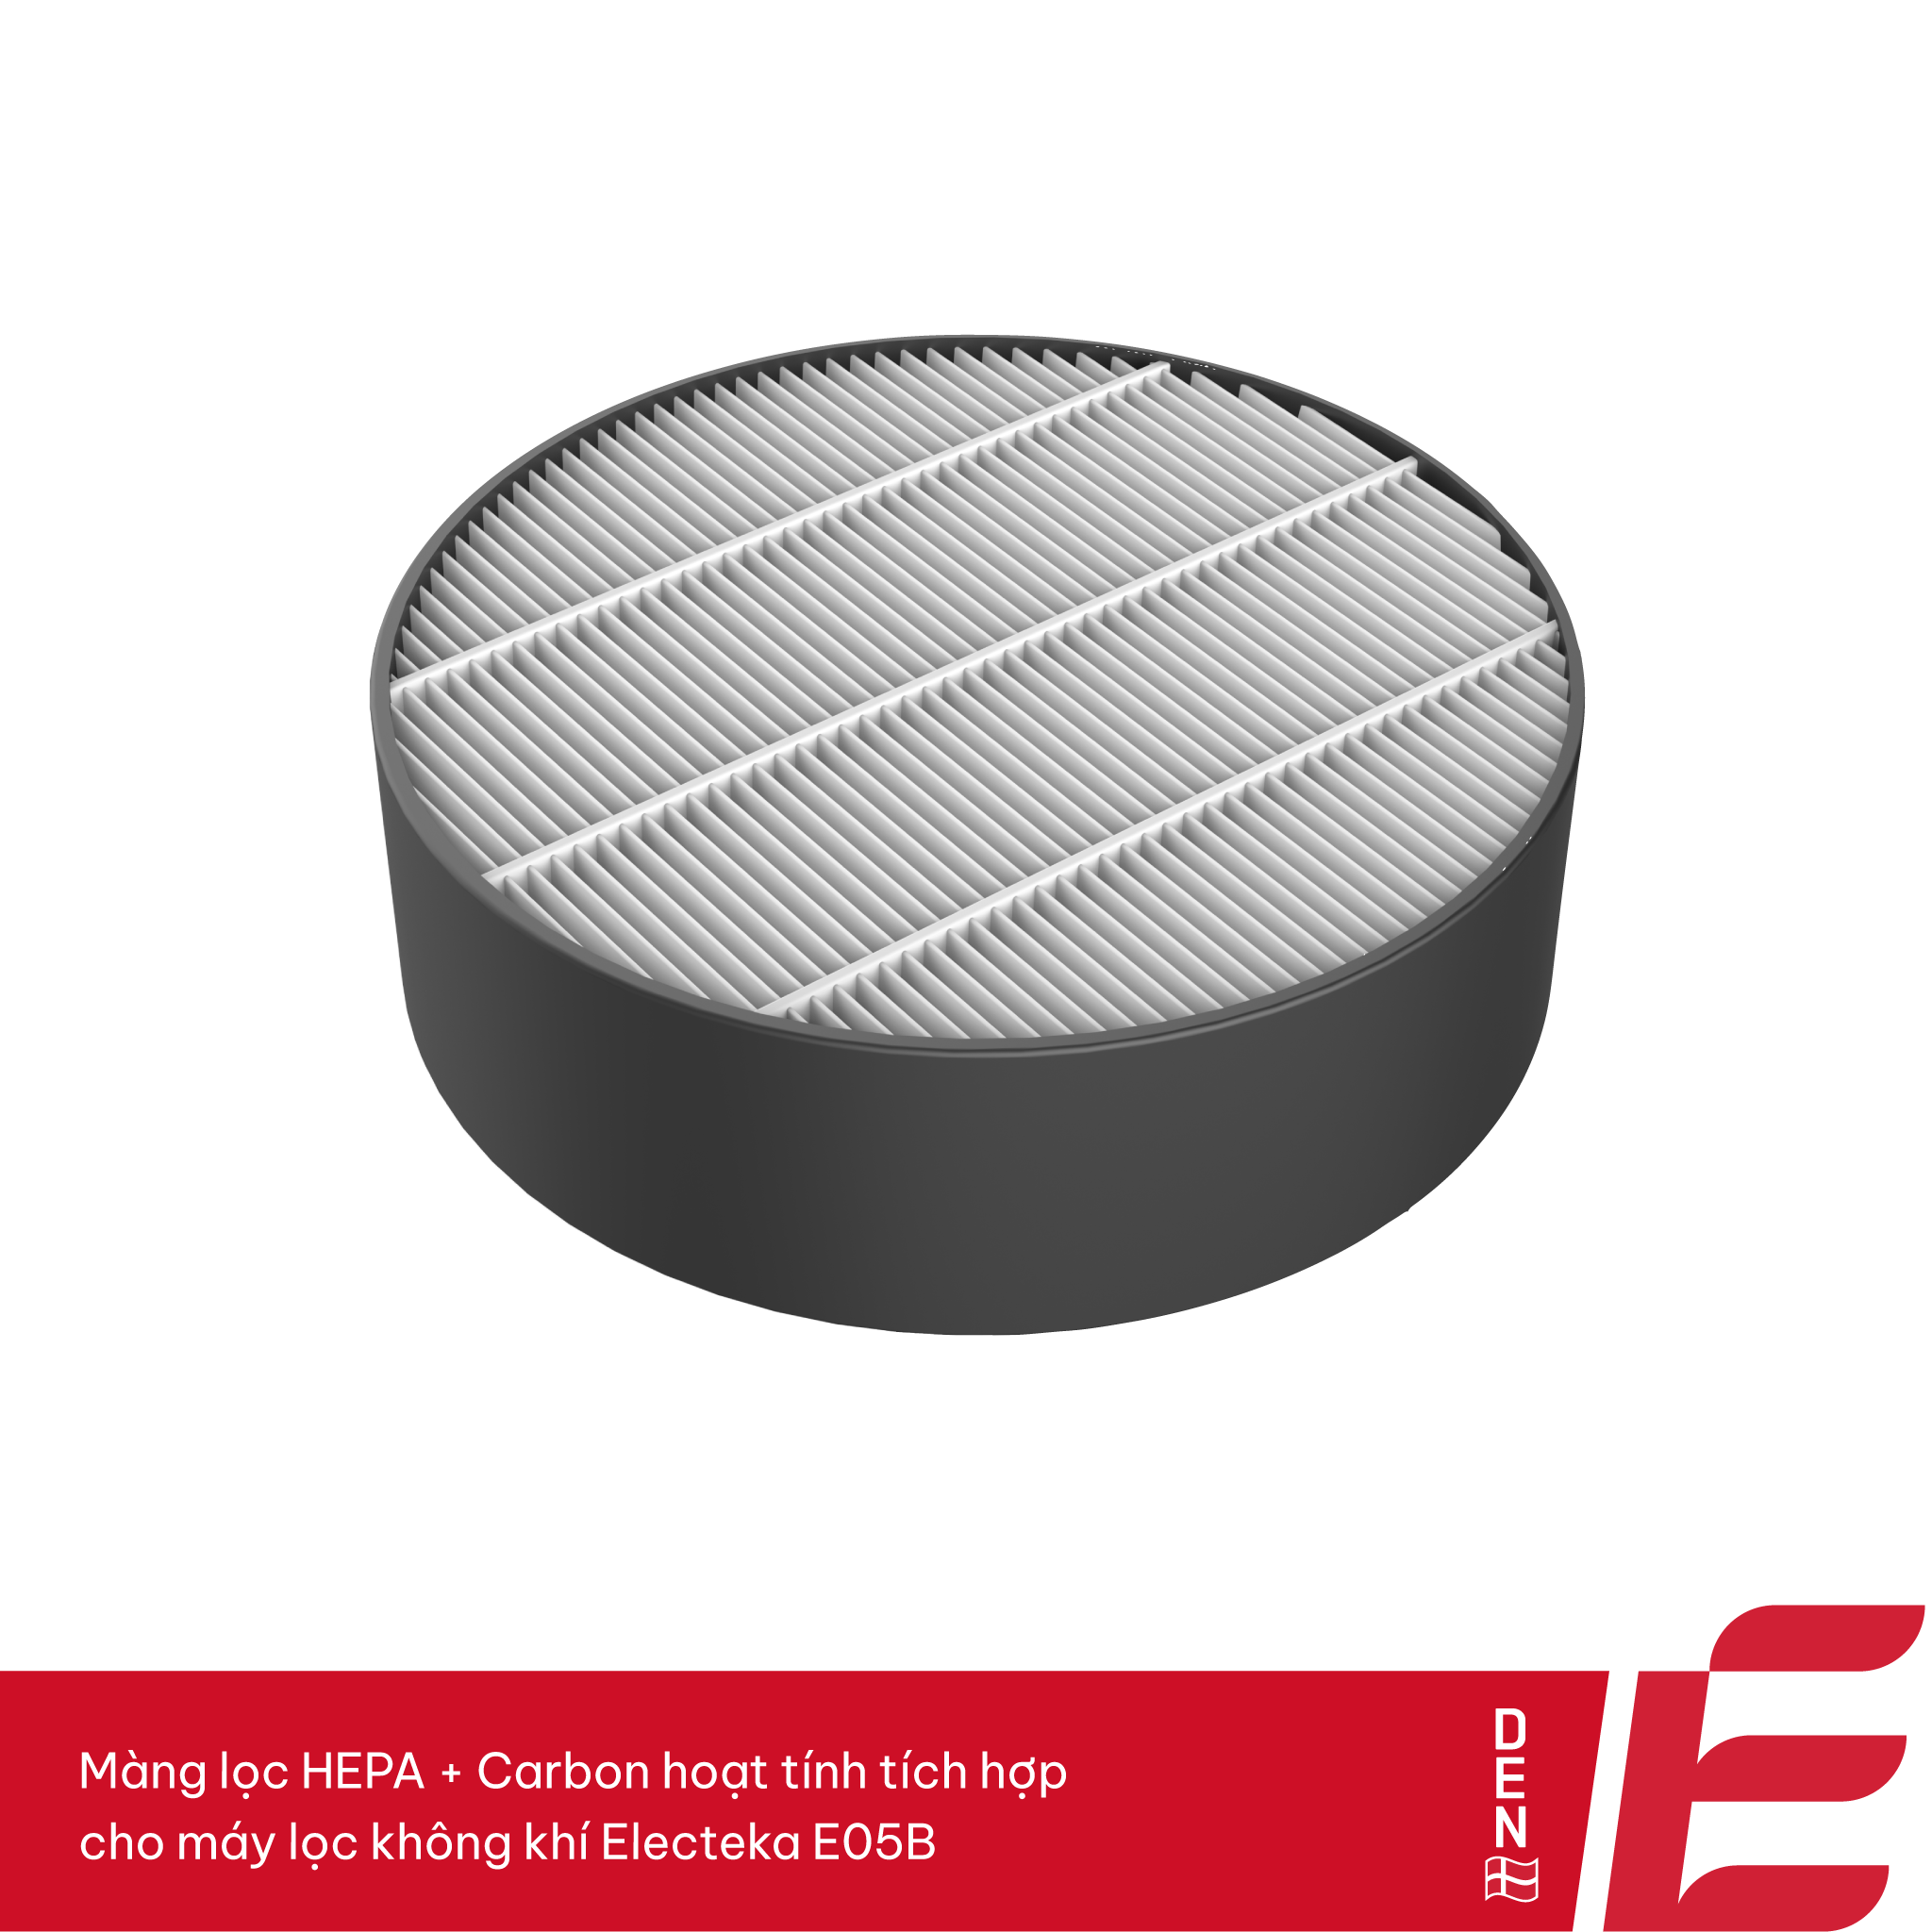 Bộ lọc HEPA + Than hoạt tính tích hợp – Dùng cho máy lọc không khí Electeka E12